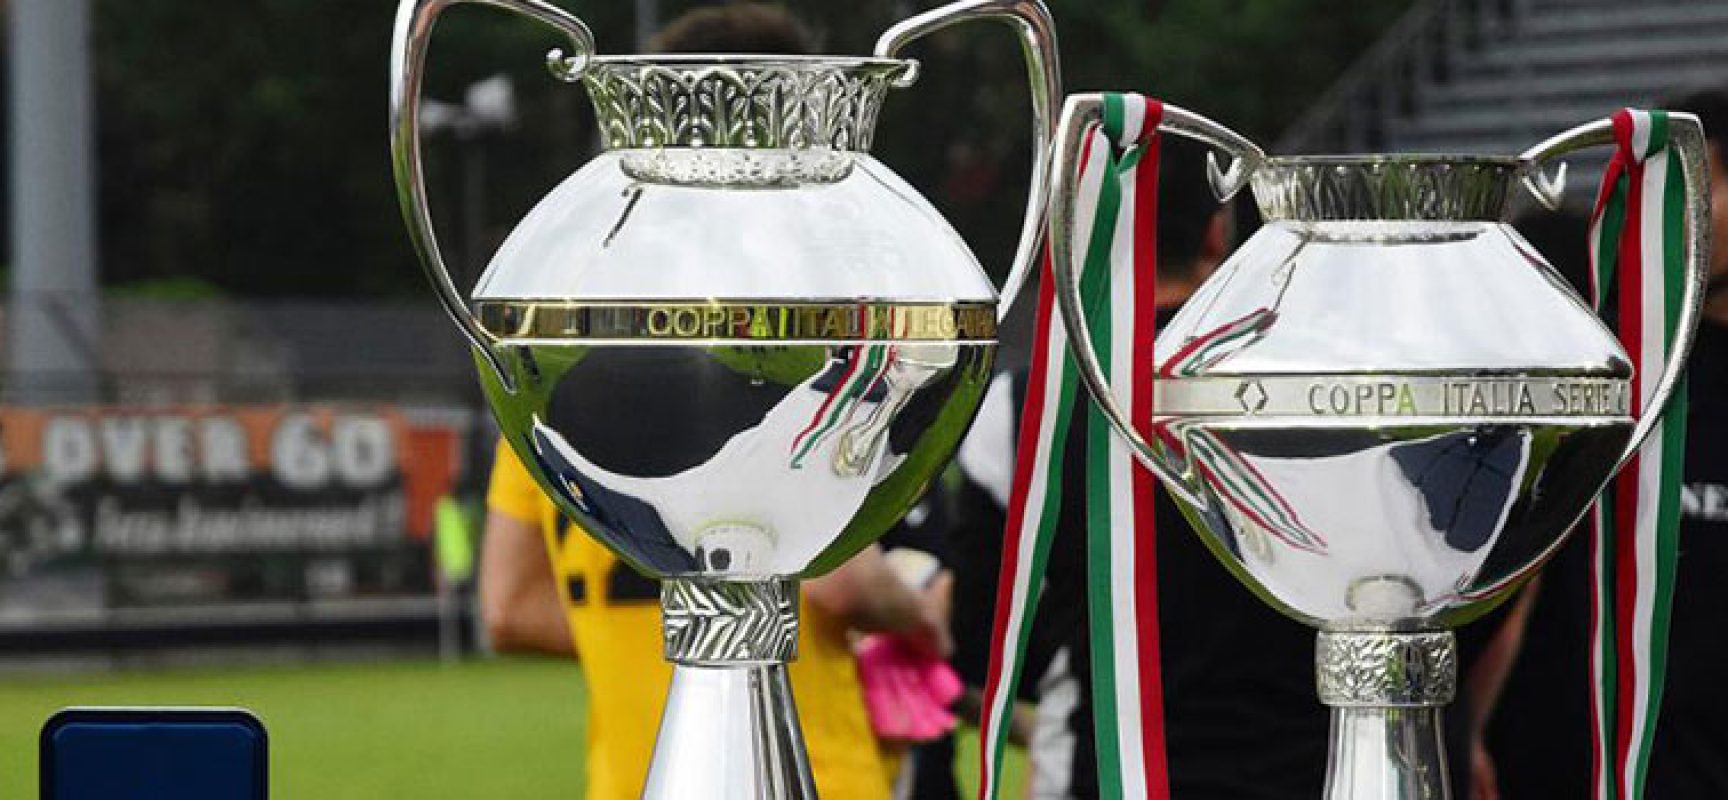 Bisceglie Calcio: tra tanti dubbi una certezza, il 5 agosto c’è la Coppa Italia